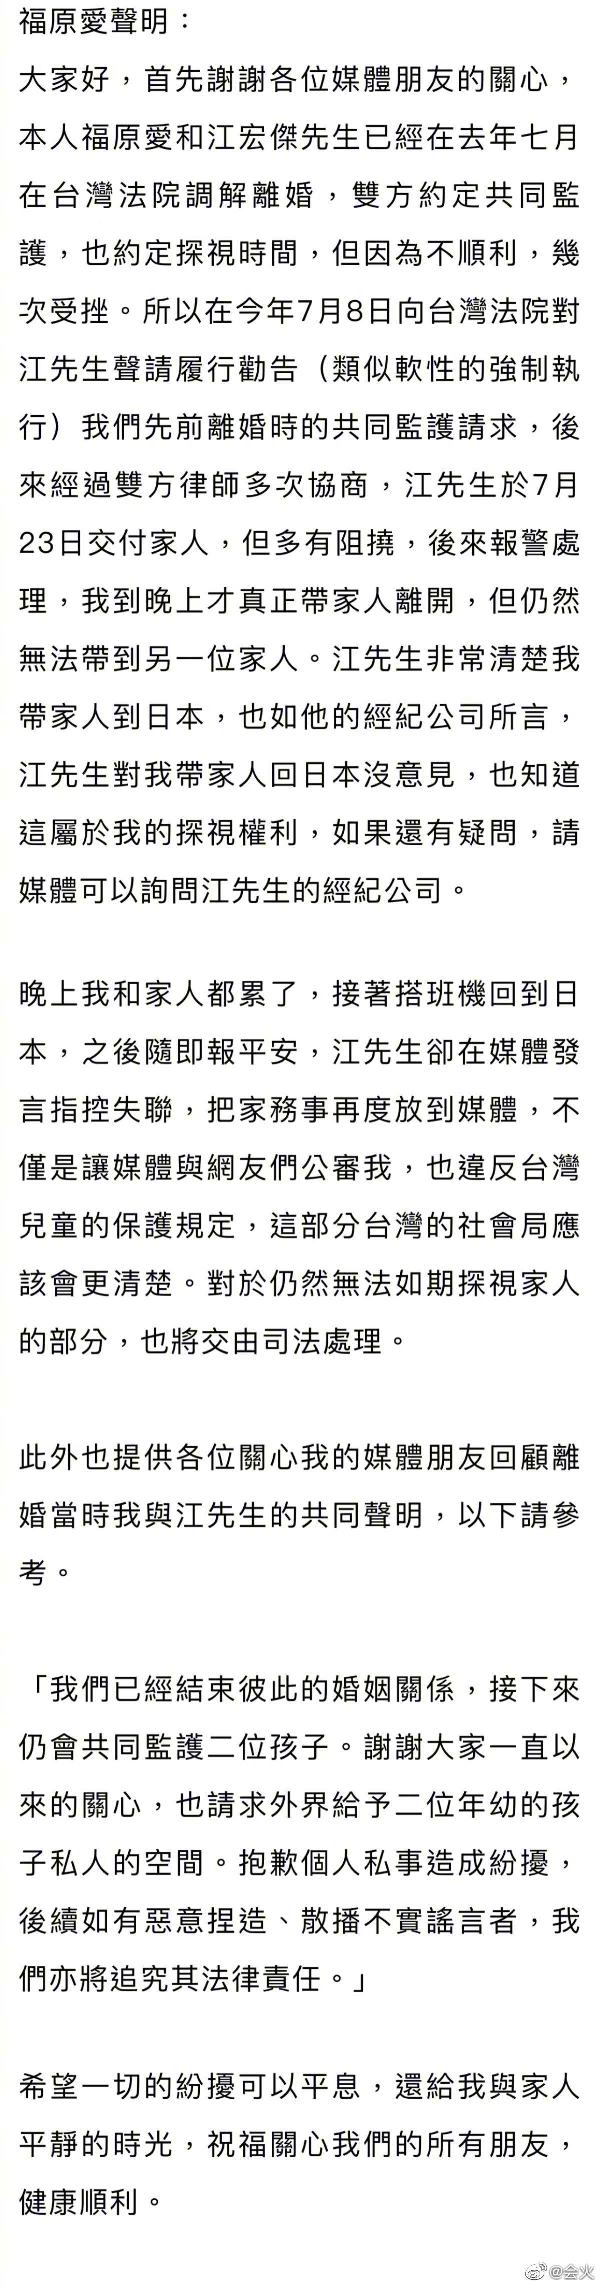 福原爱发表声明否认江宏杰失联指控，证实已带孩子返日插图5